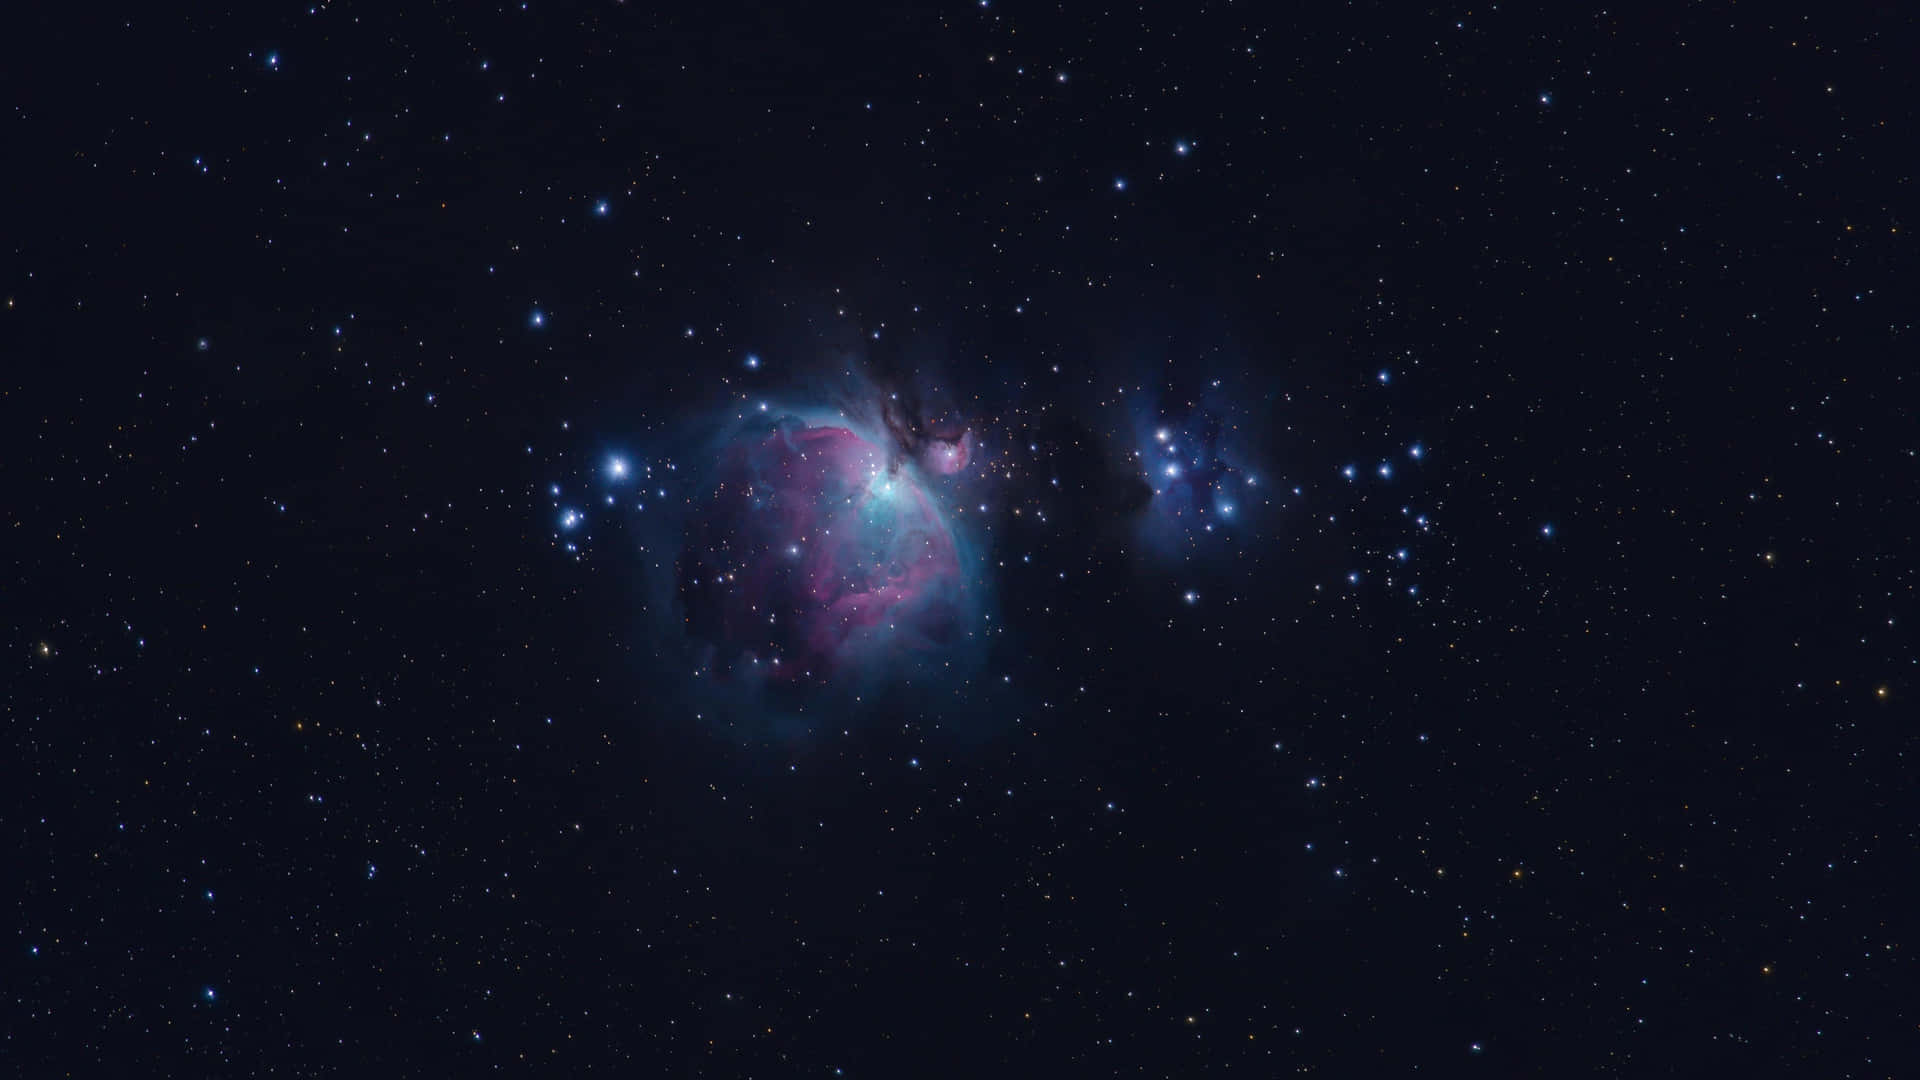 Observandoo Céu Noturno Para Identificar A Constelação De Orion.